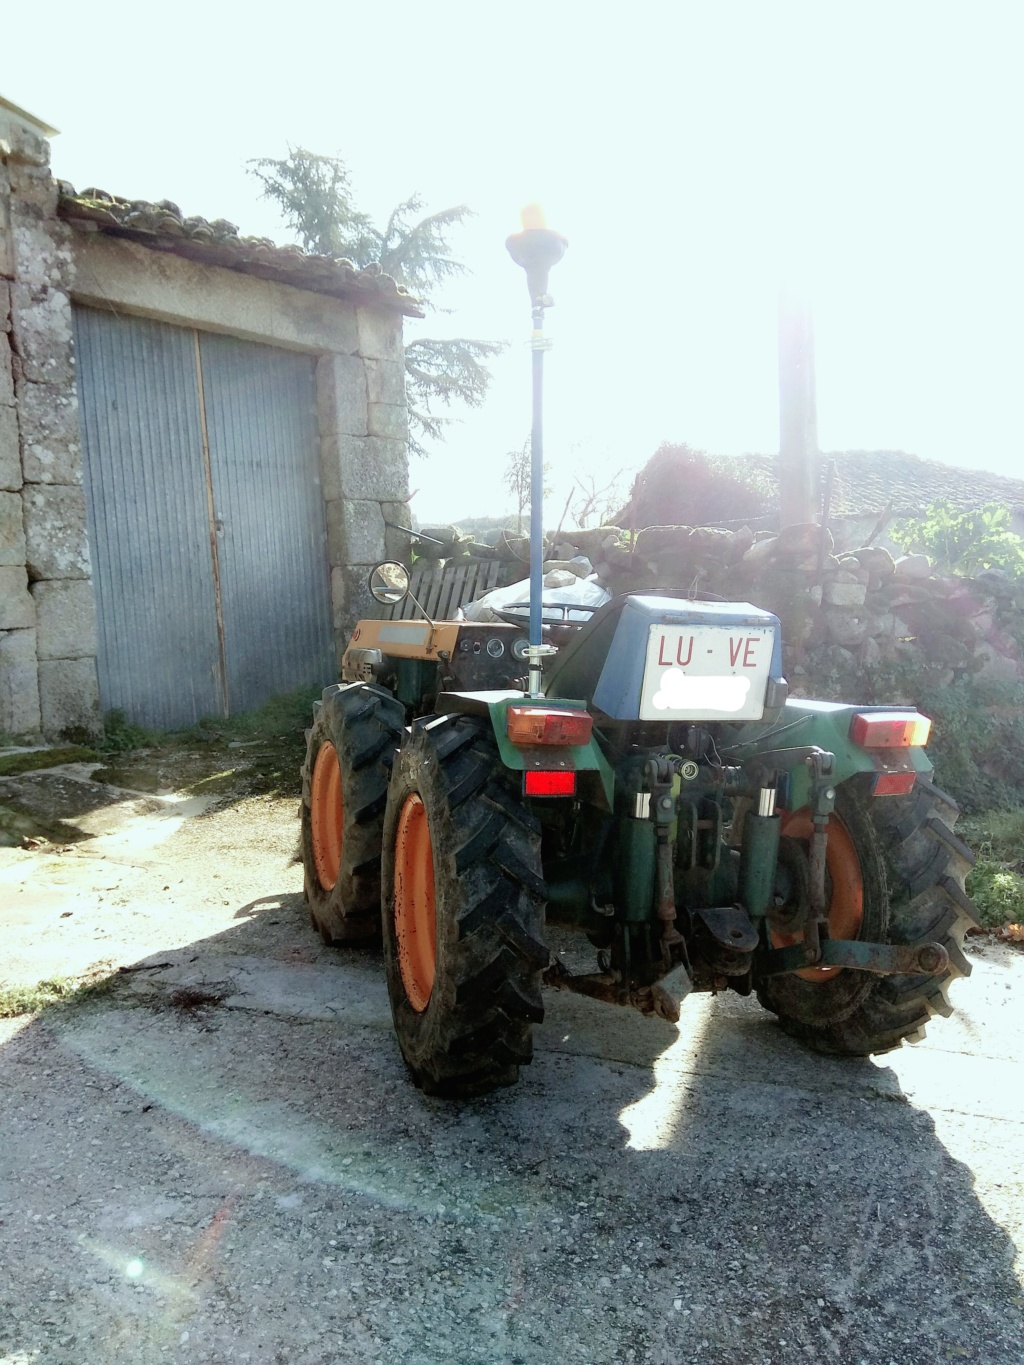 Nuevo en el foro y presentación de mi tractor BJR ME-T 3201 Inkedi11